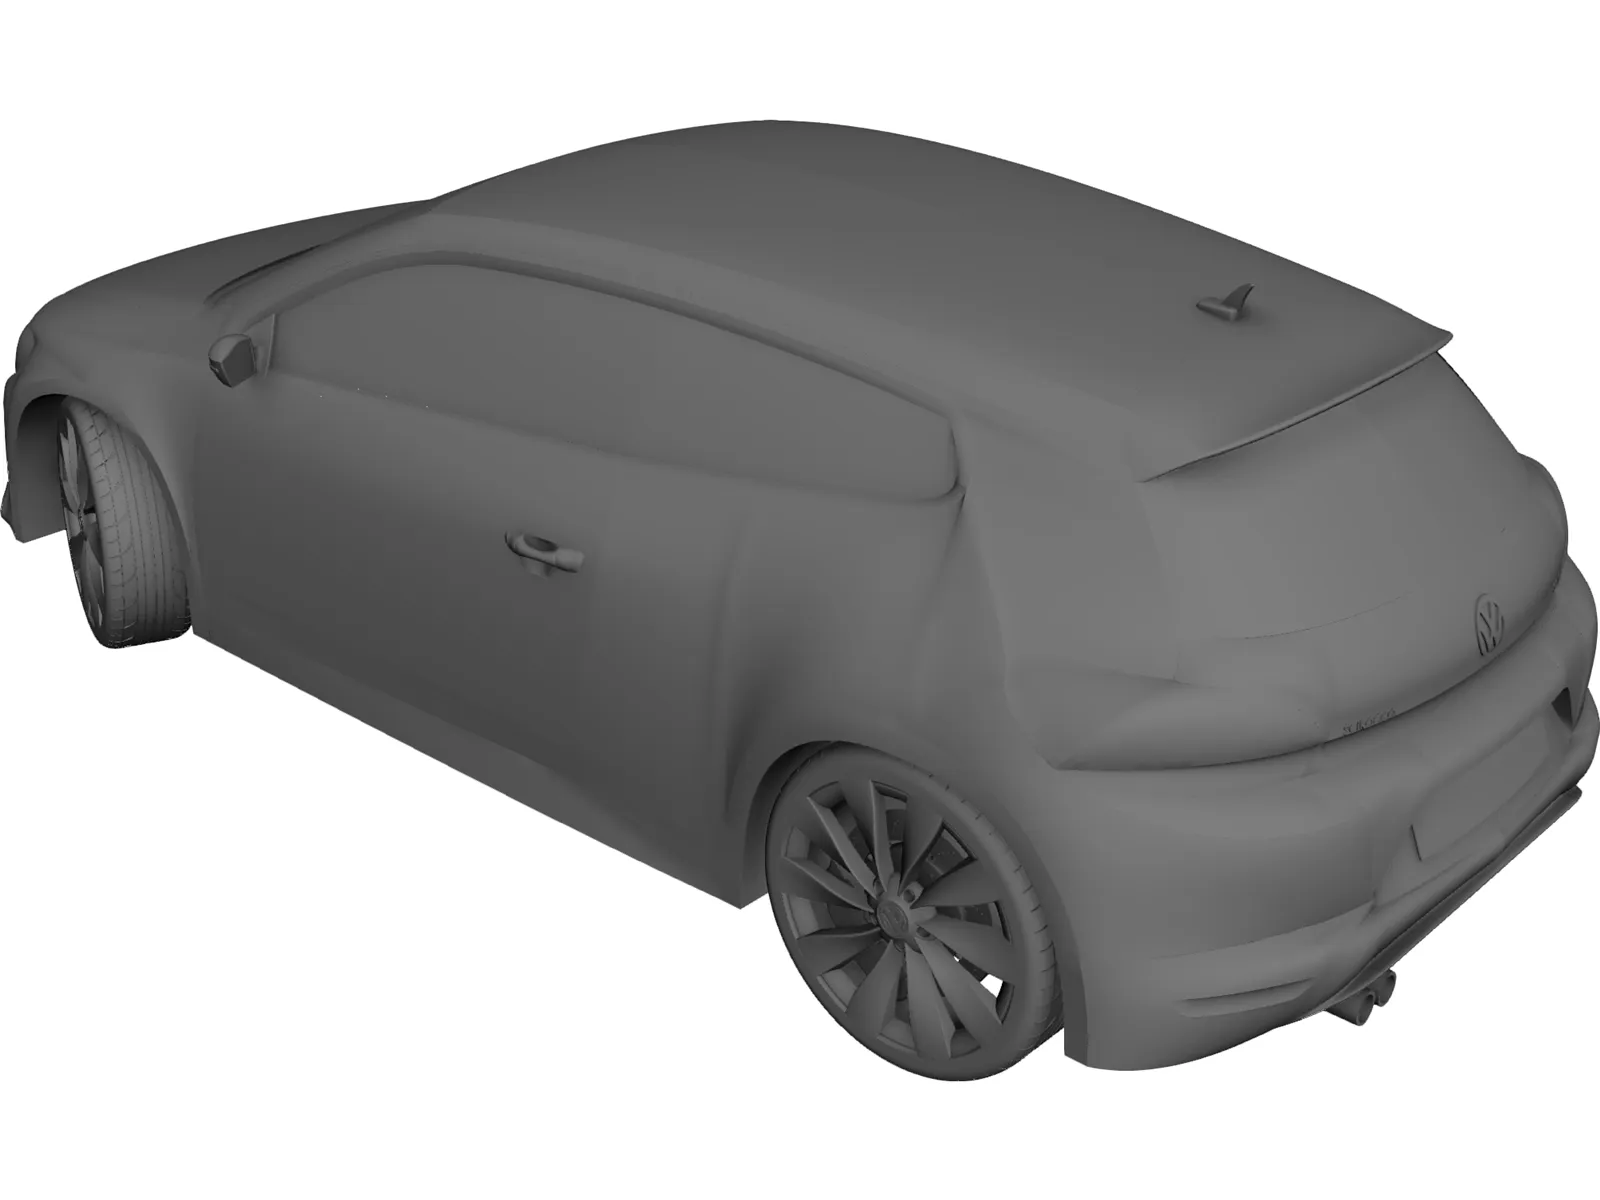 Volkswagen Scirocco 3D Model